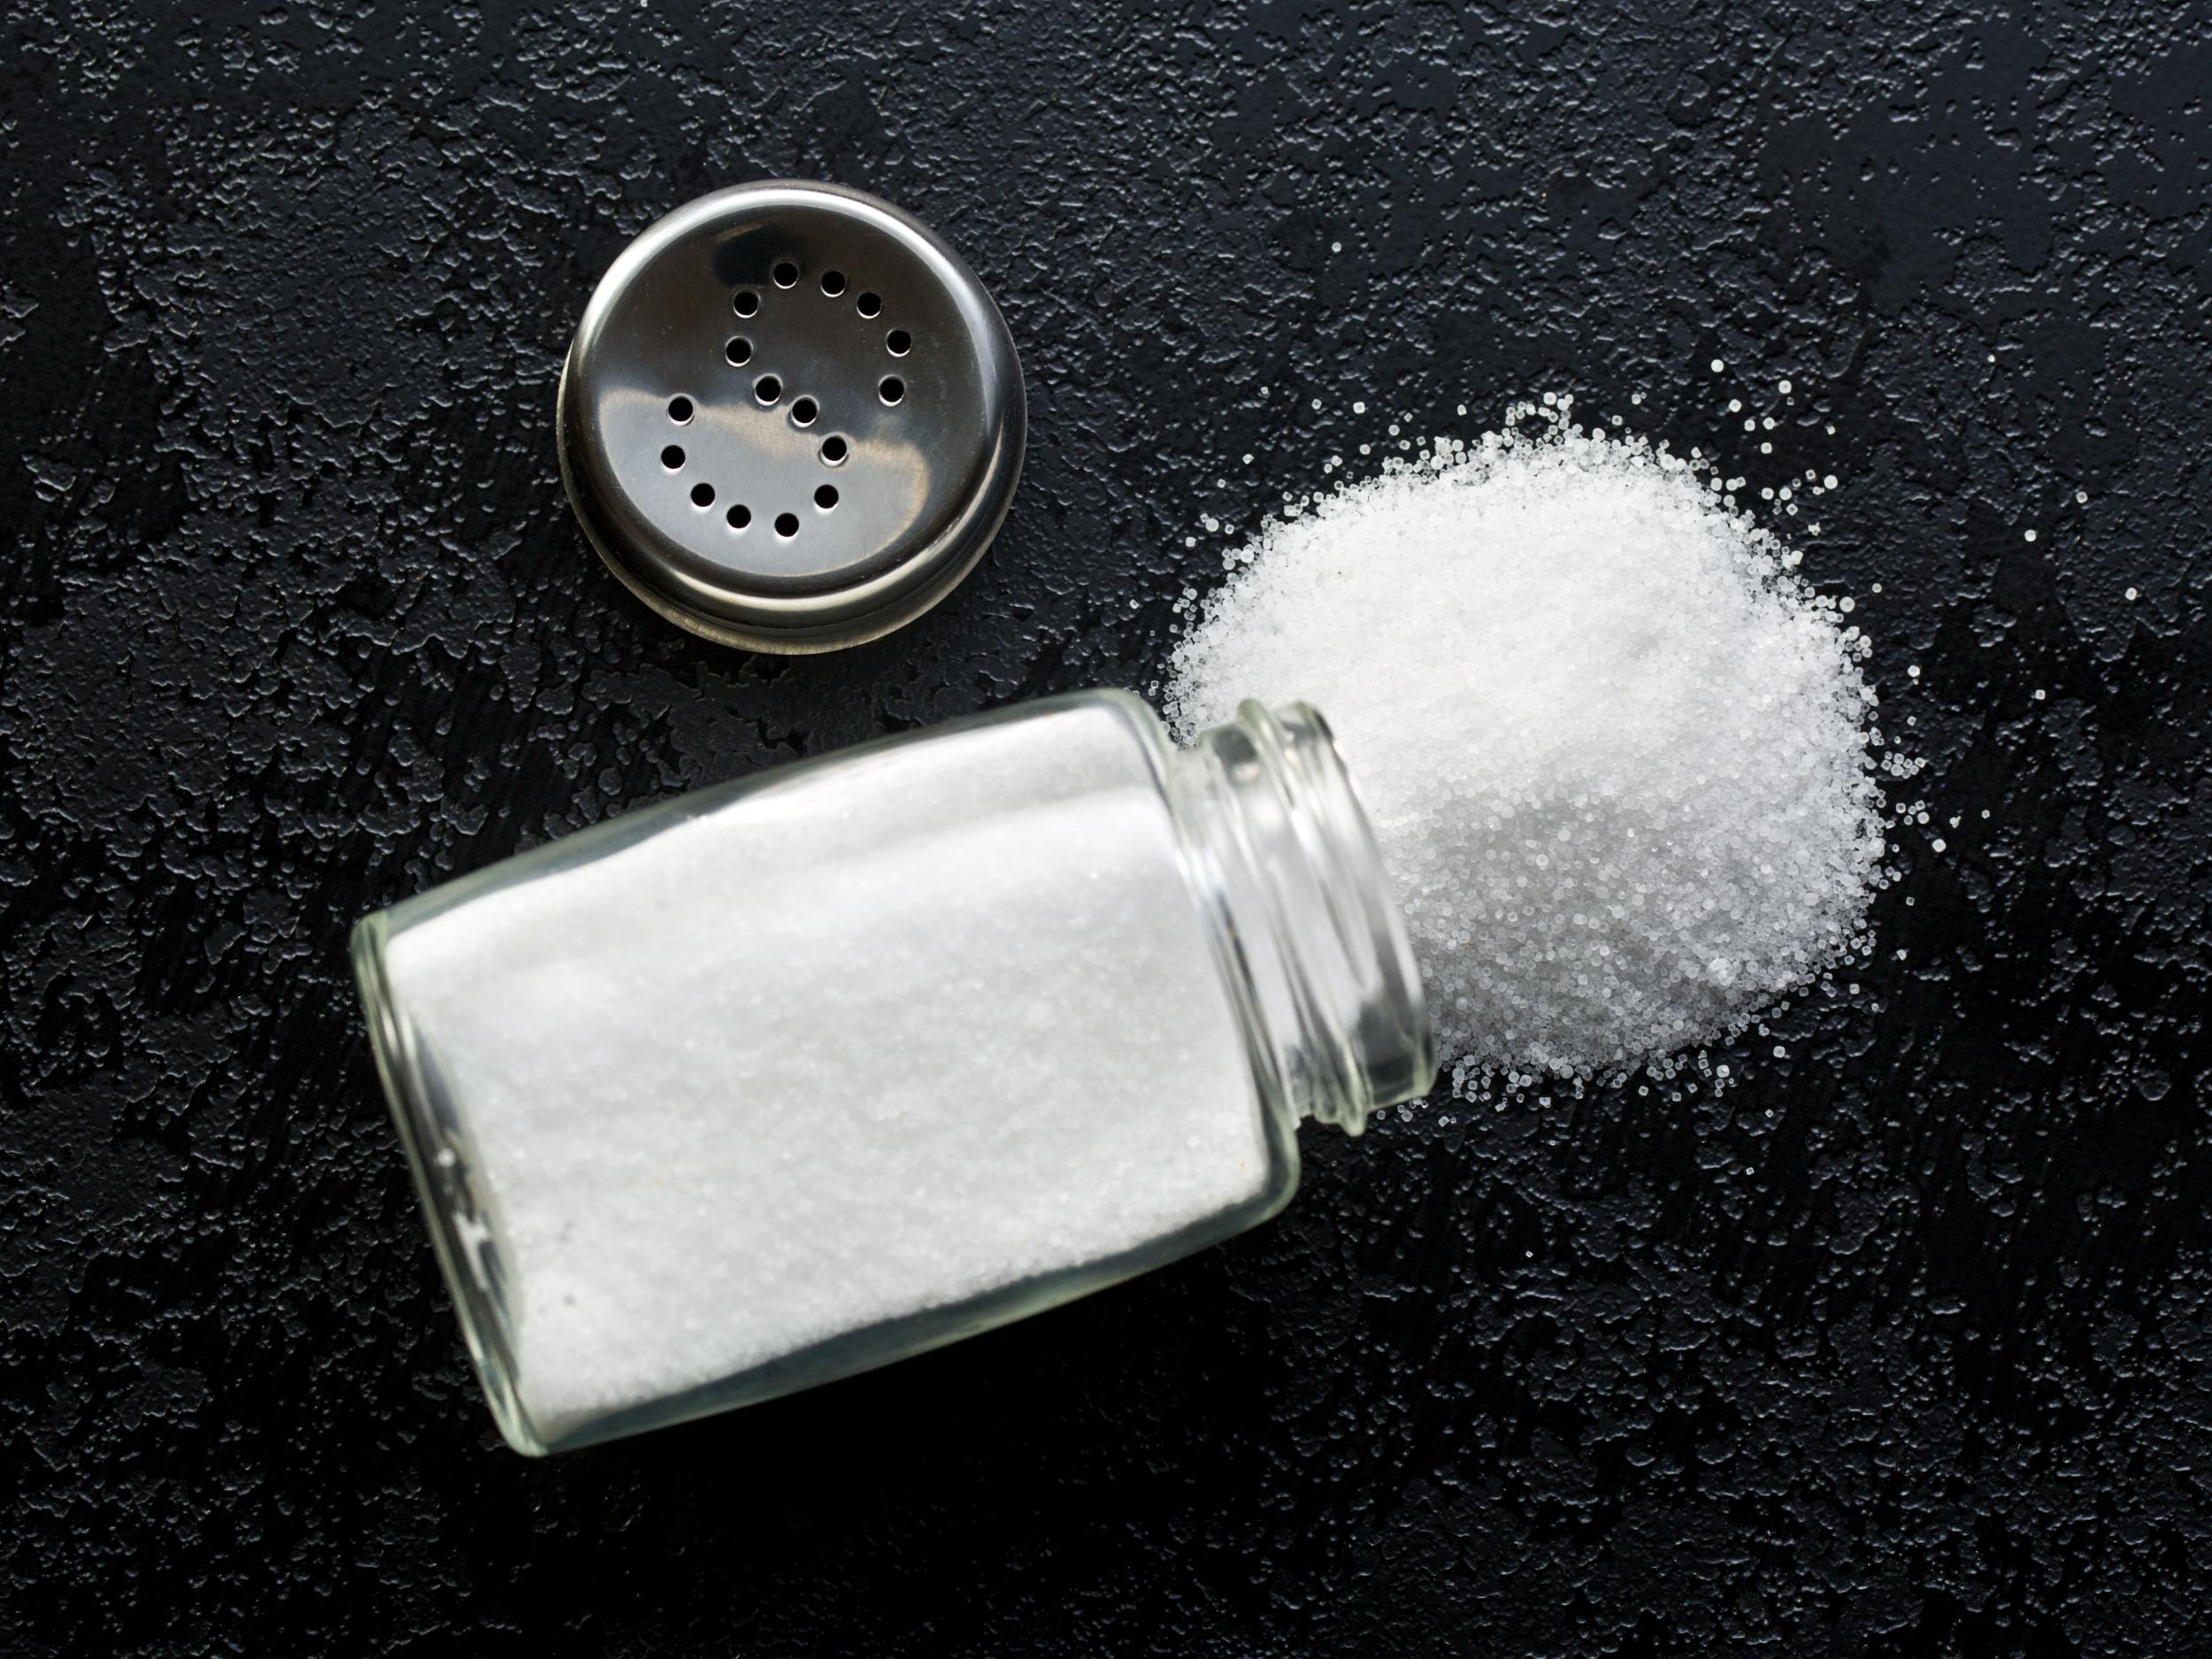 Previous studies on salt intake used faulty testing methods